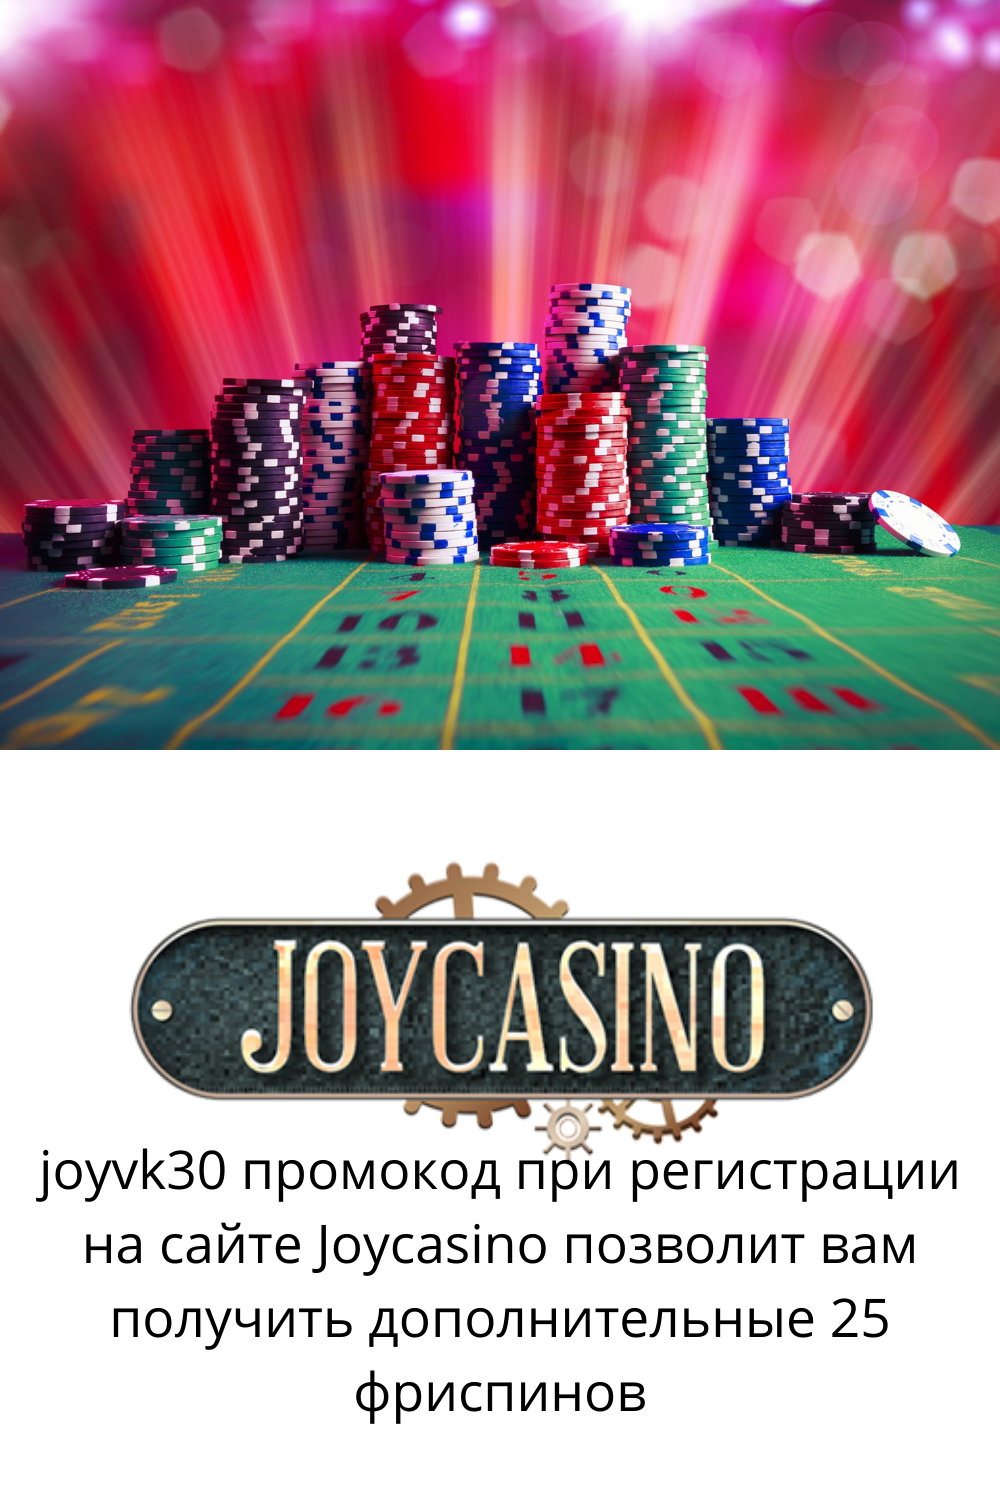 Джойказино сегодня joy casino рабочее зеркало. Джойказино казино зеркало. Joycasino зеркало сайта.